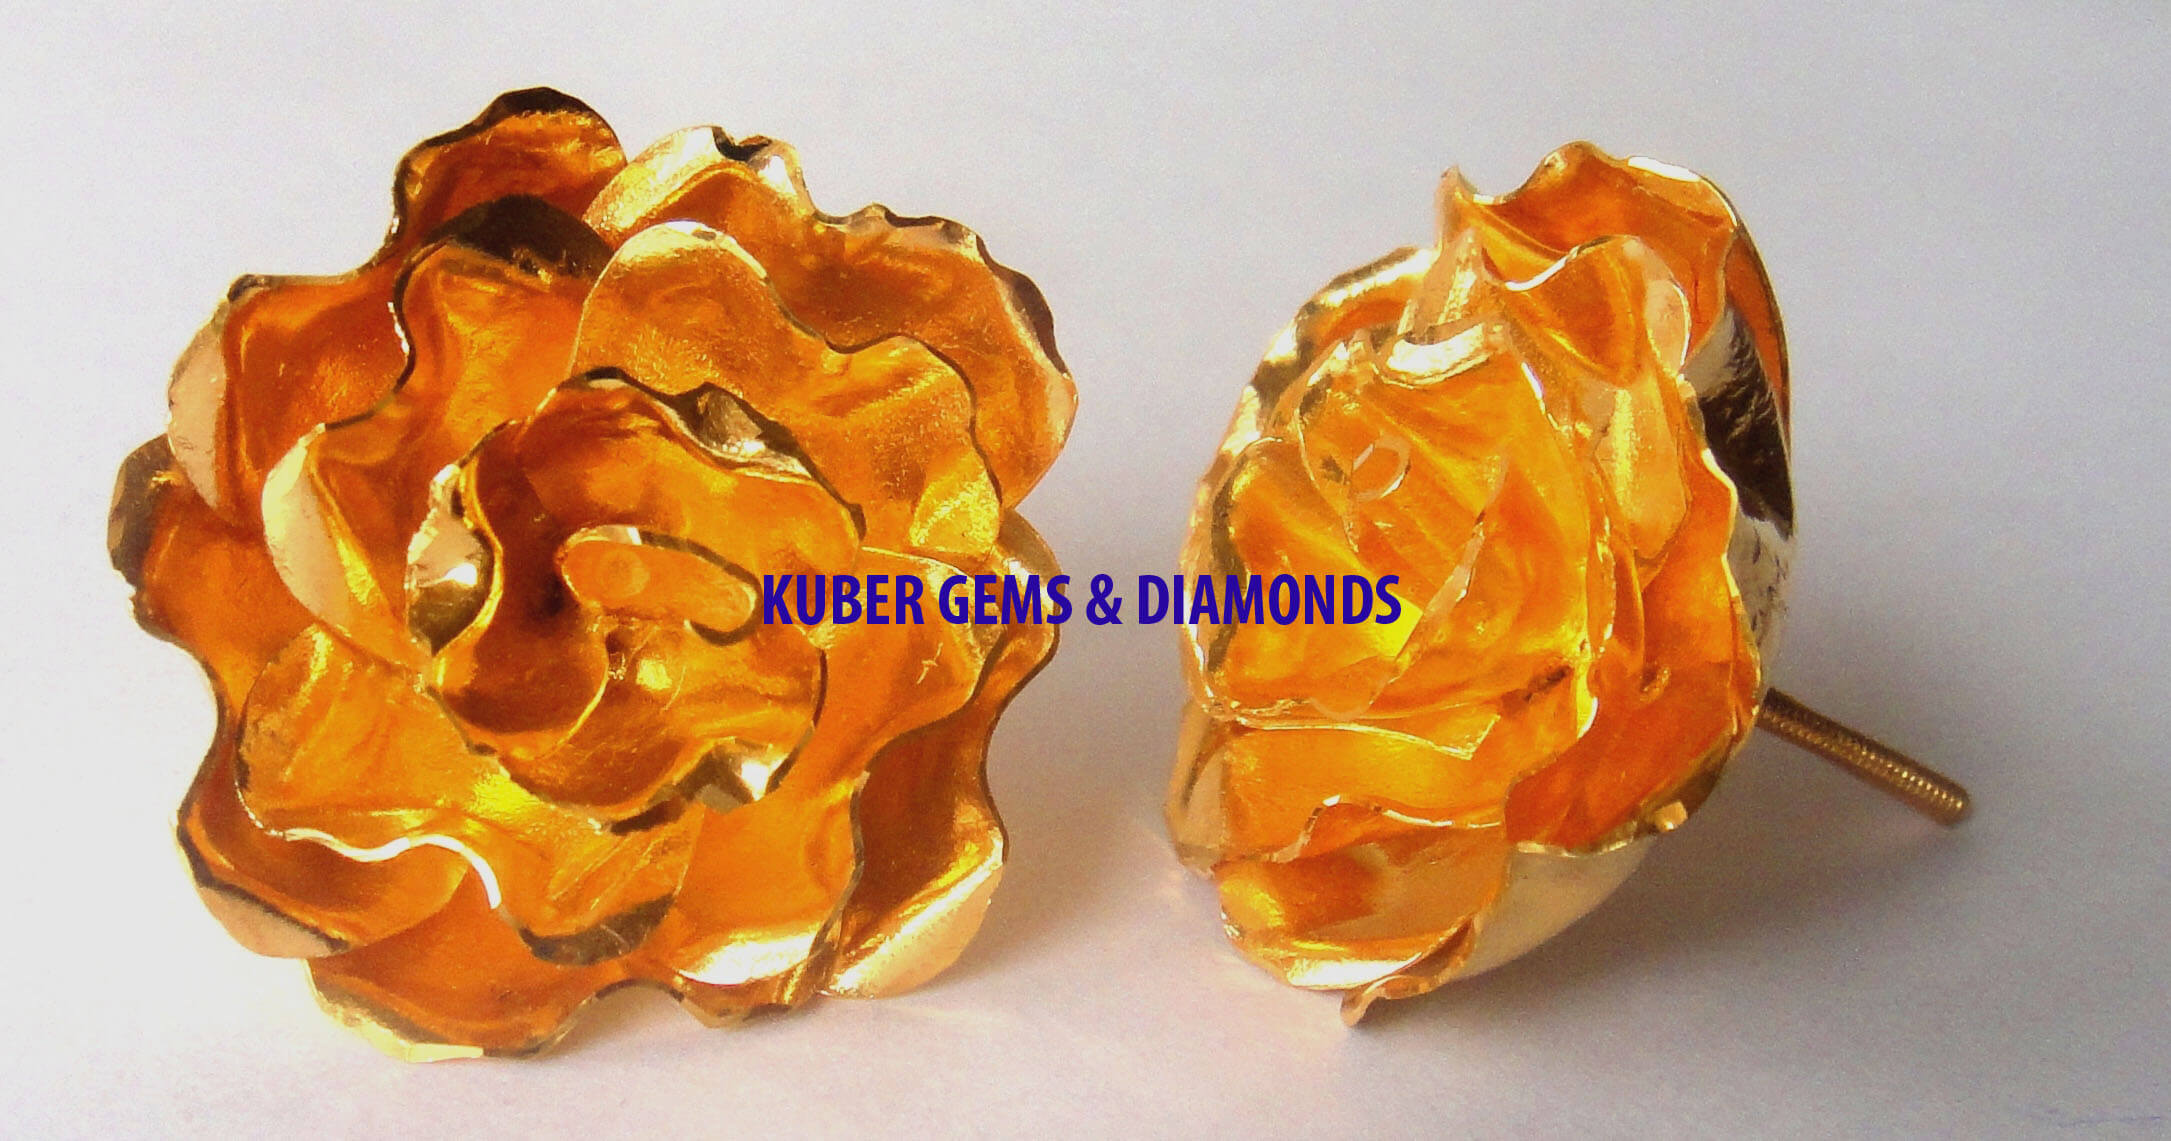 Kuber Gems Diamonds kgd Gold Gross Wt-14.198 a